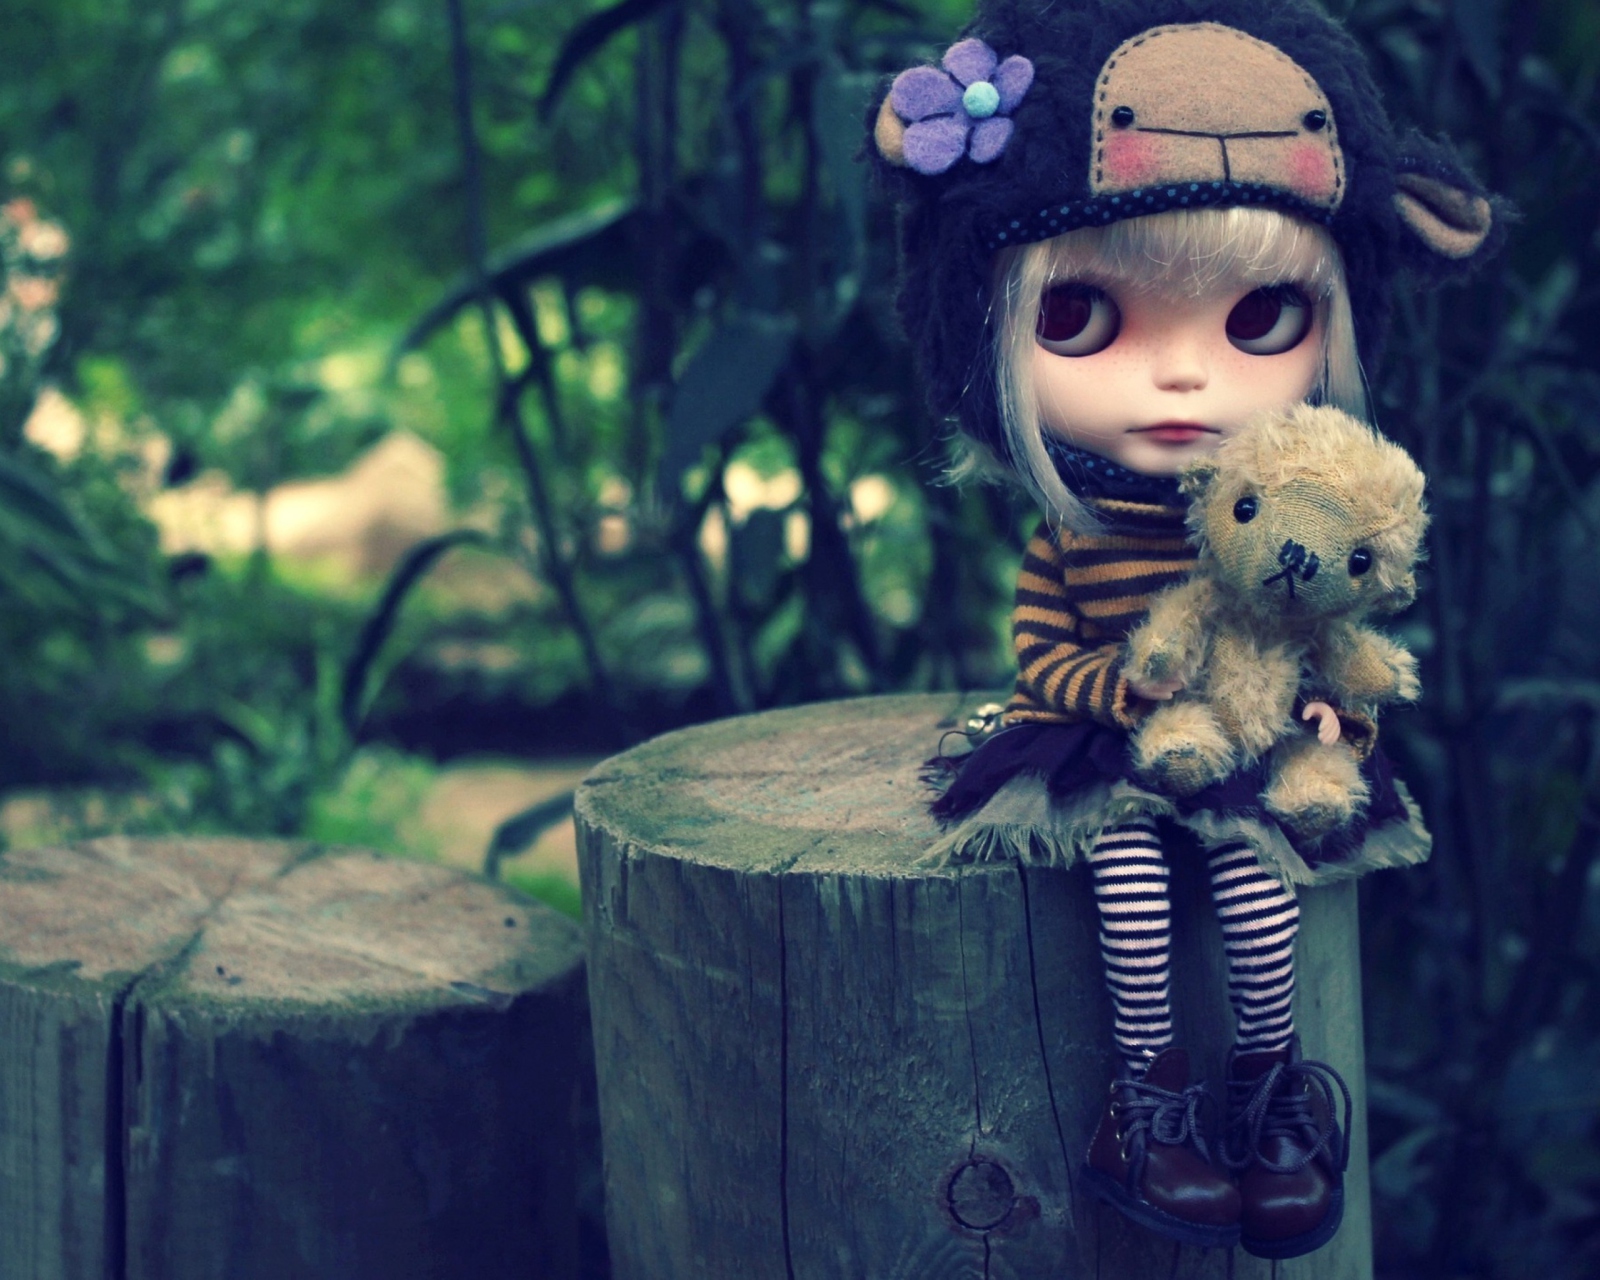 Cute Doll With Teddy Bear wallpaper 1600x1280